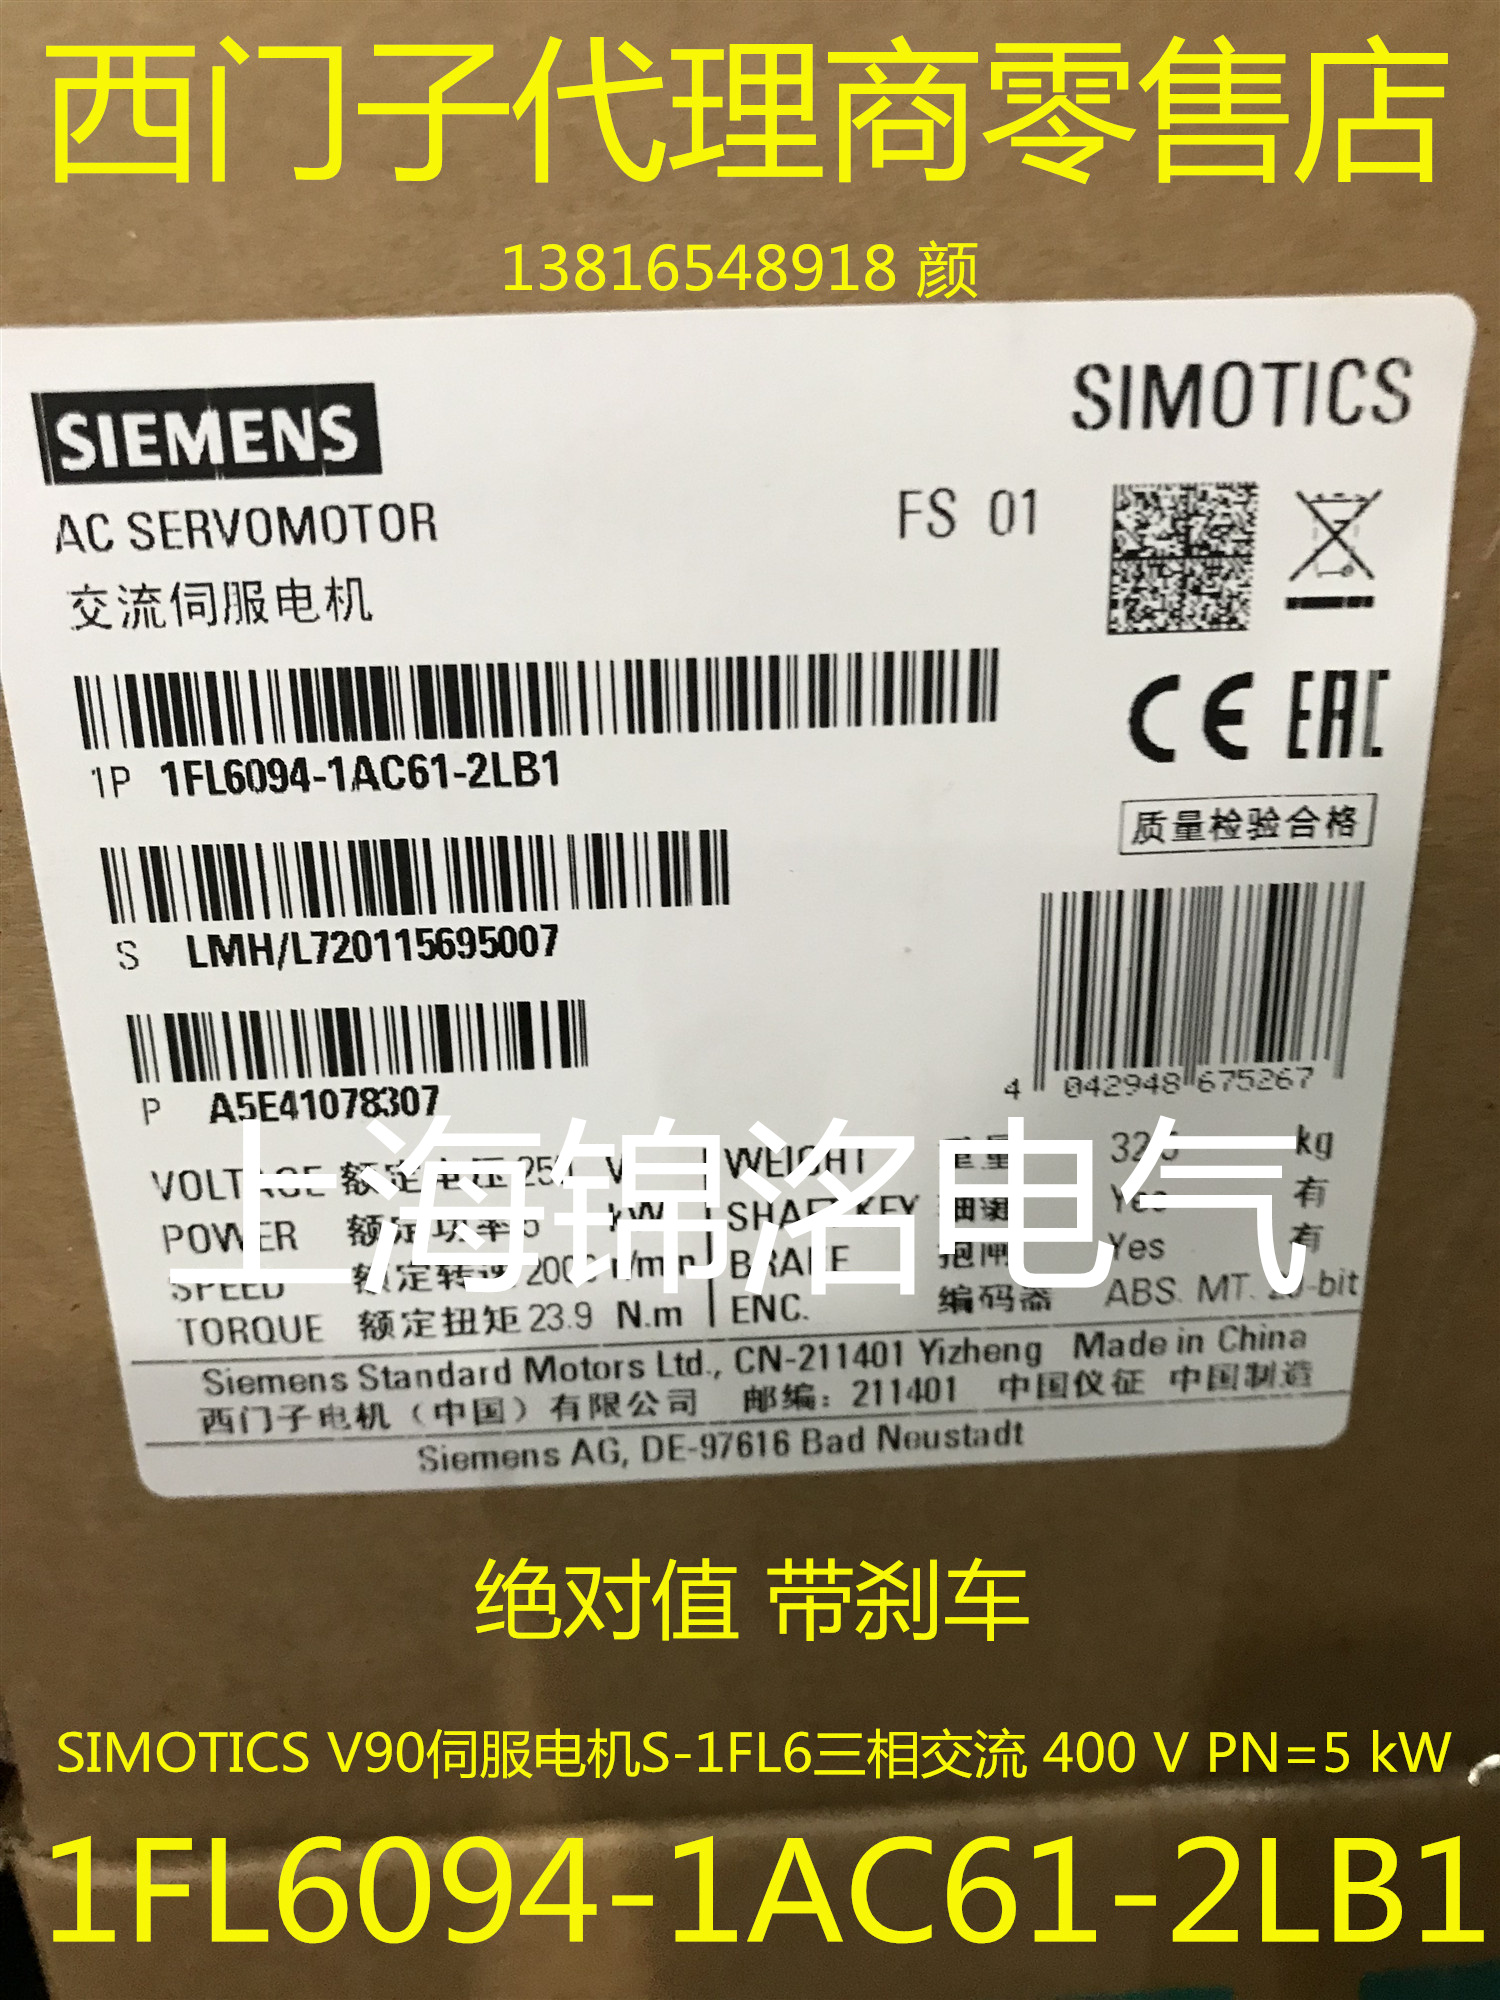 西门子1FL6094-1AC61-2LB1 SIMOTICS S-1FL6-1FL6伺服电机